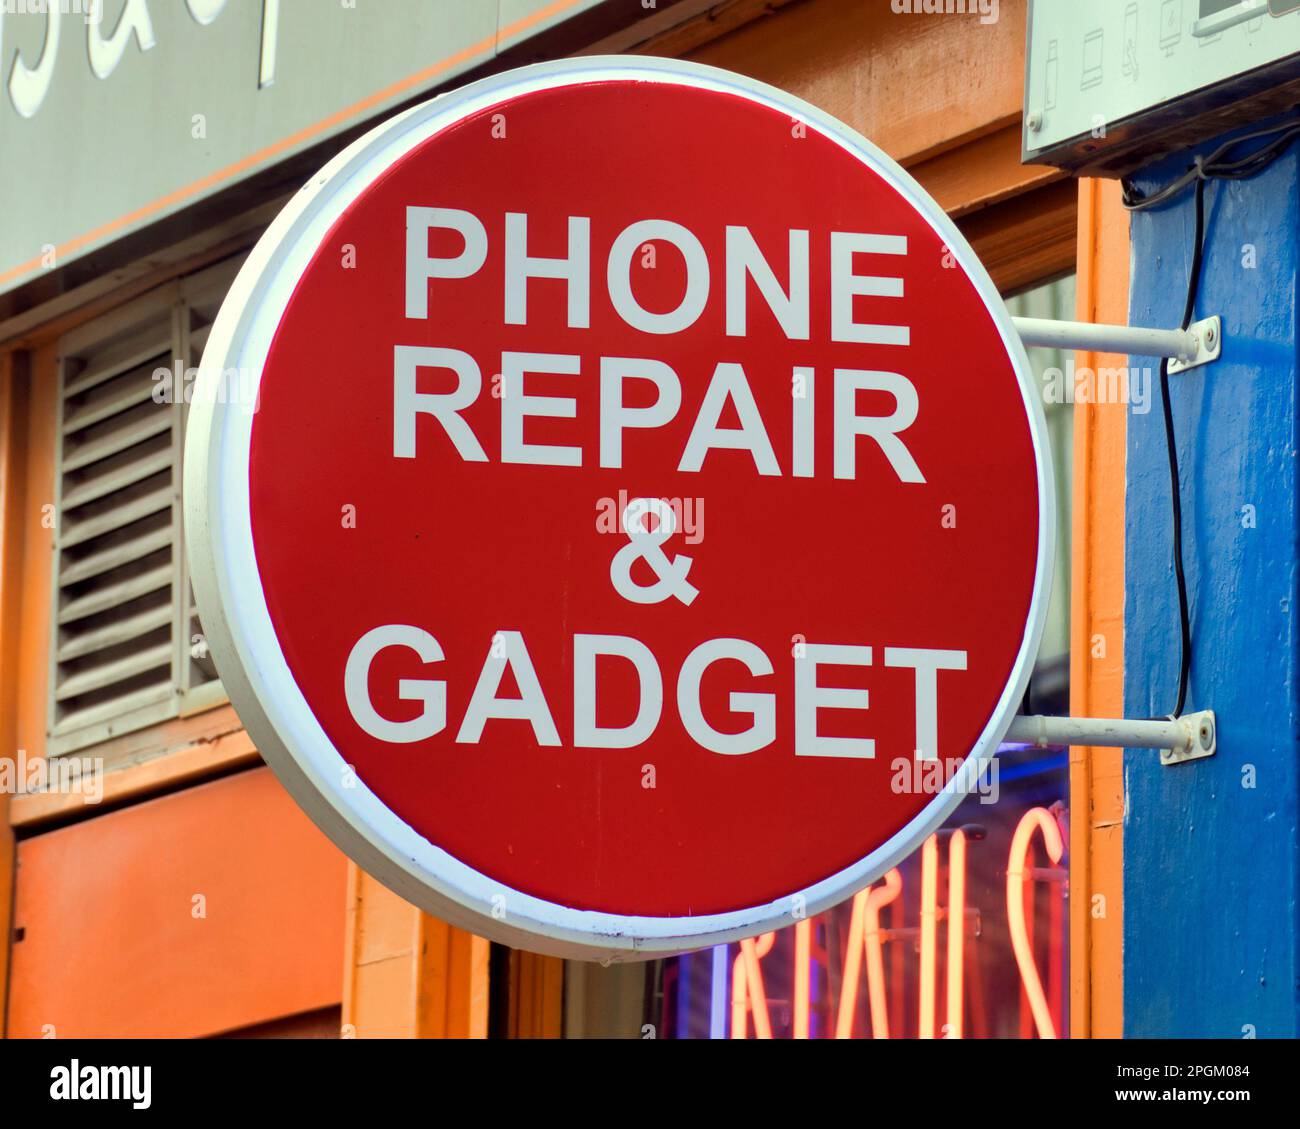 phone repair and gadget sign Stock Photo